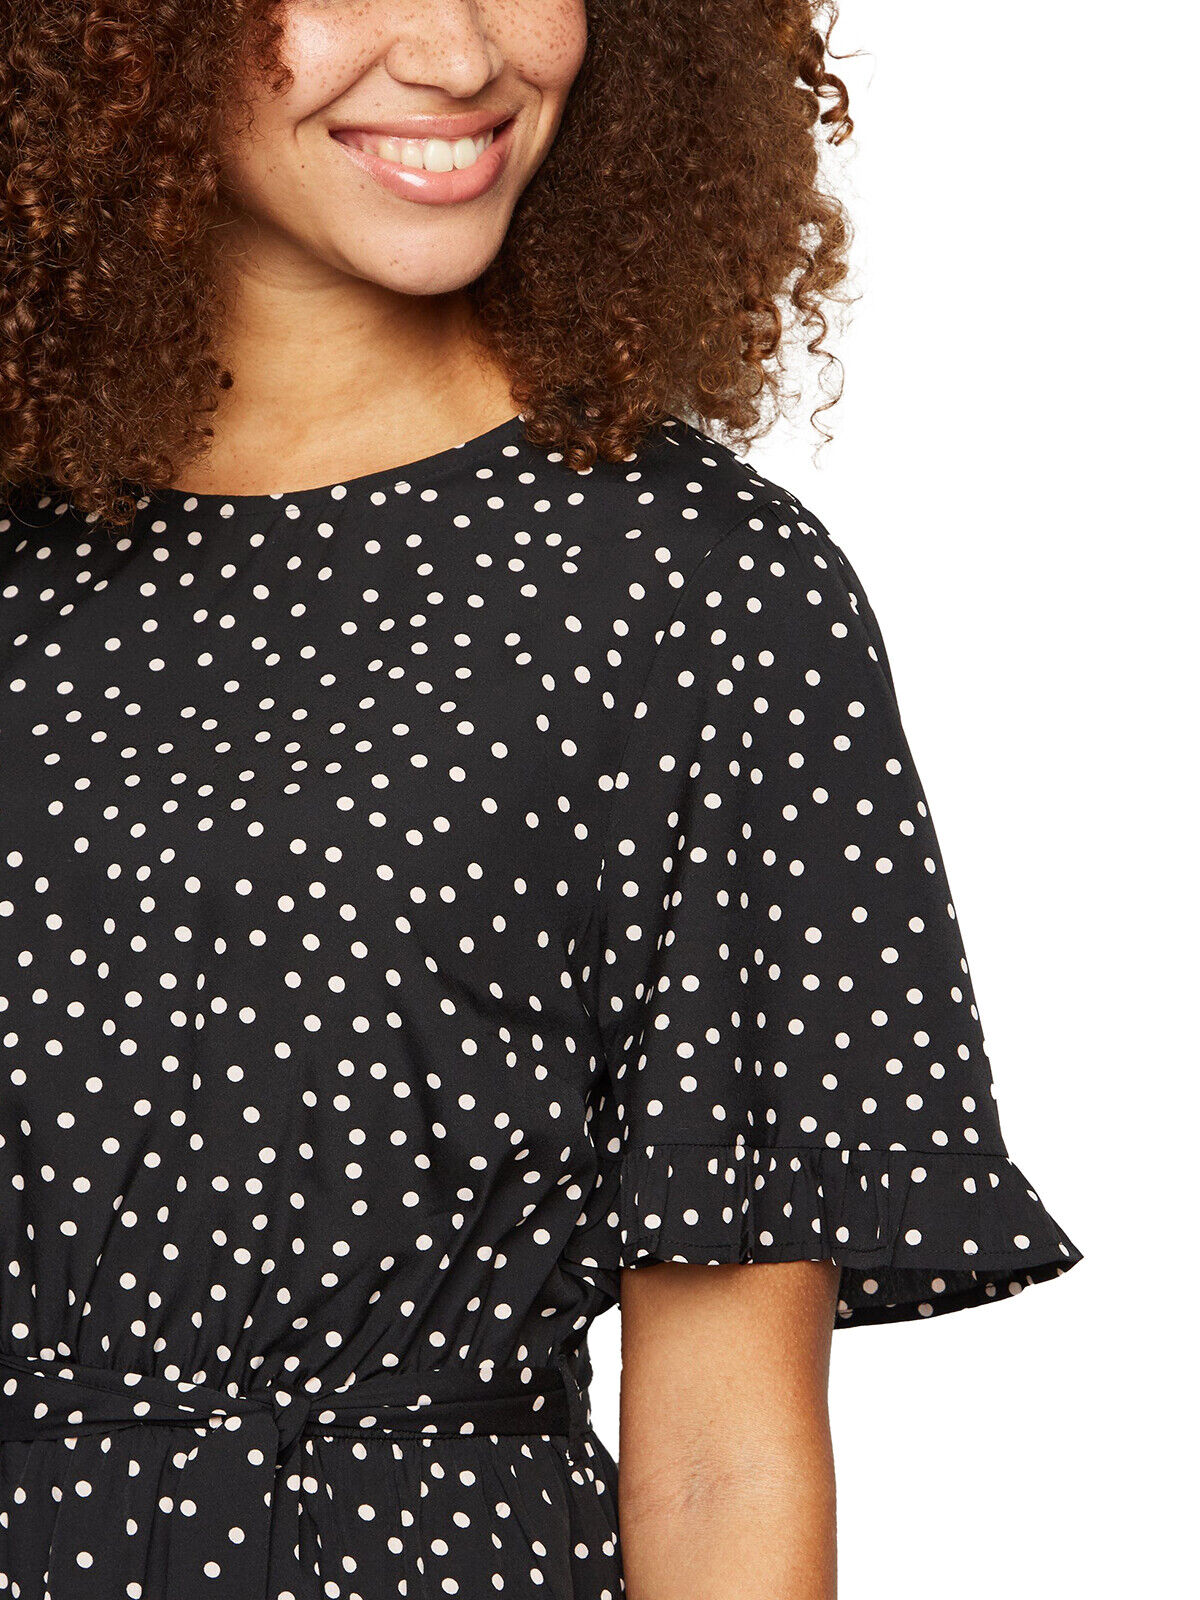 EX New Look Black Polka Dot Frill Trim Dress in Sizes 10, 12, 14, 16, 18